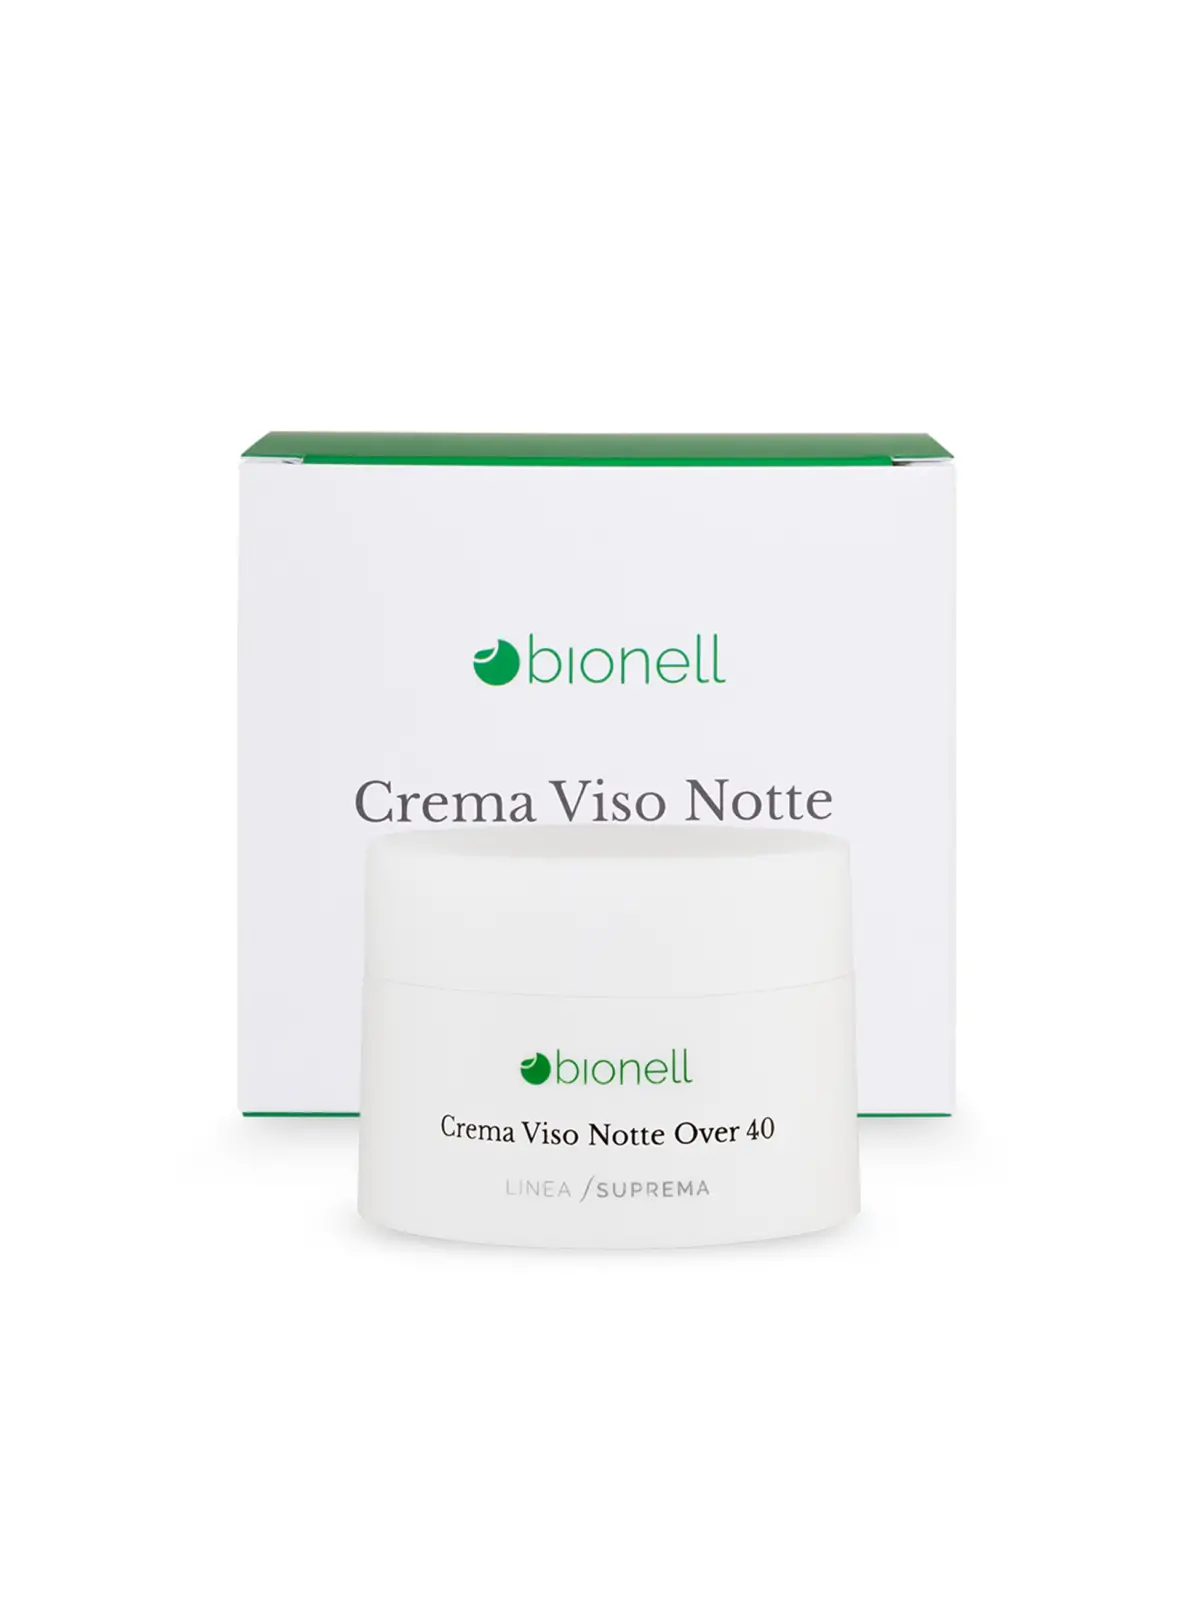 Bionell Crema viso notte over 40 50 ml 8,80 € -20%